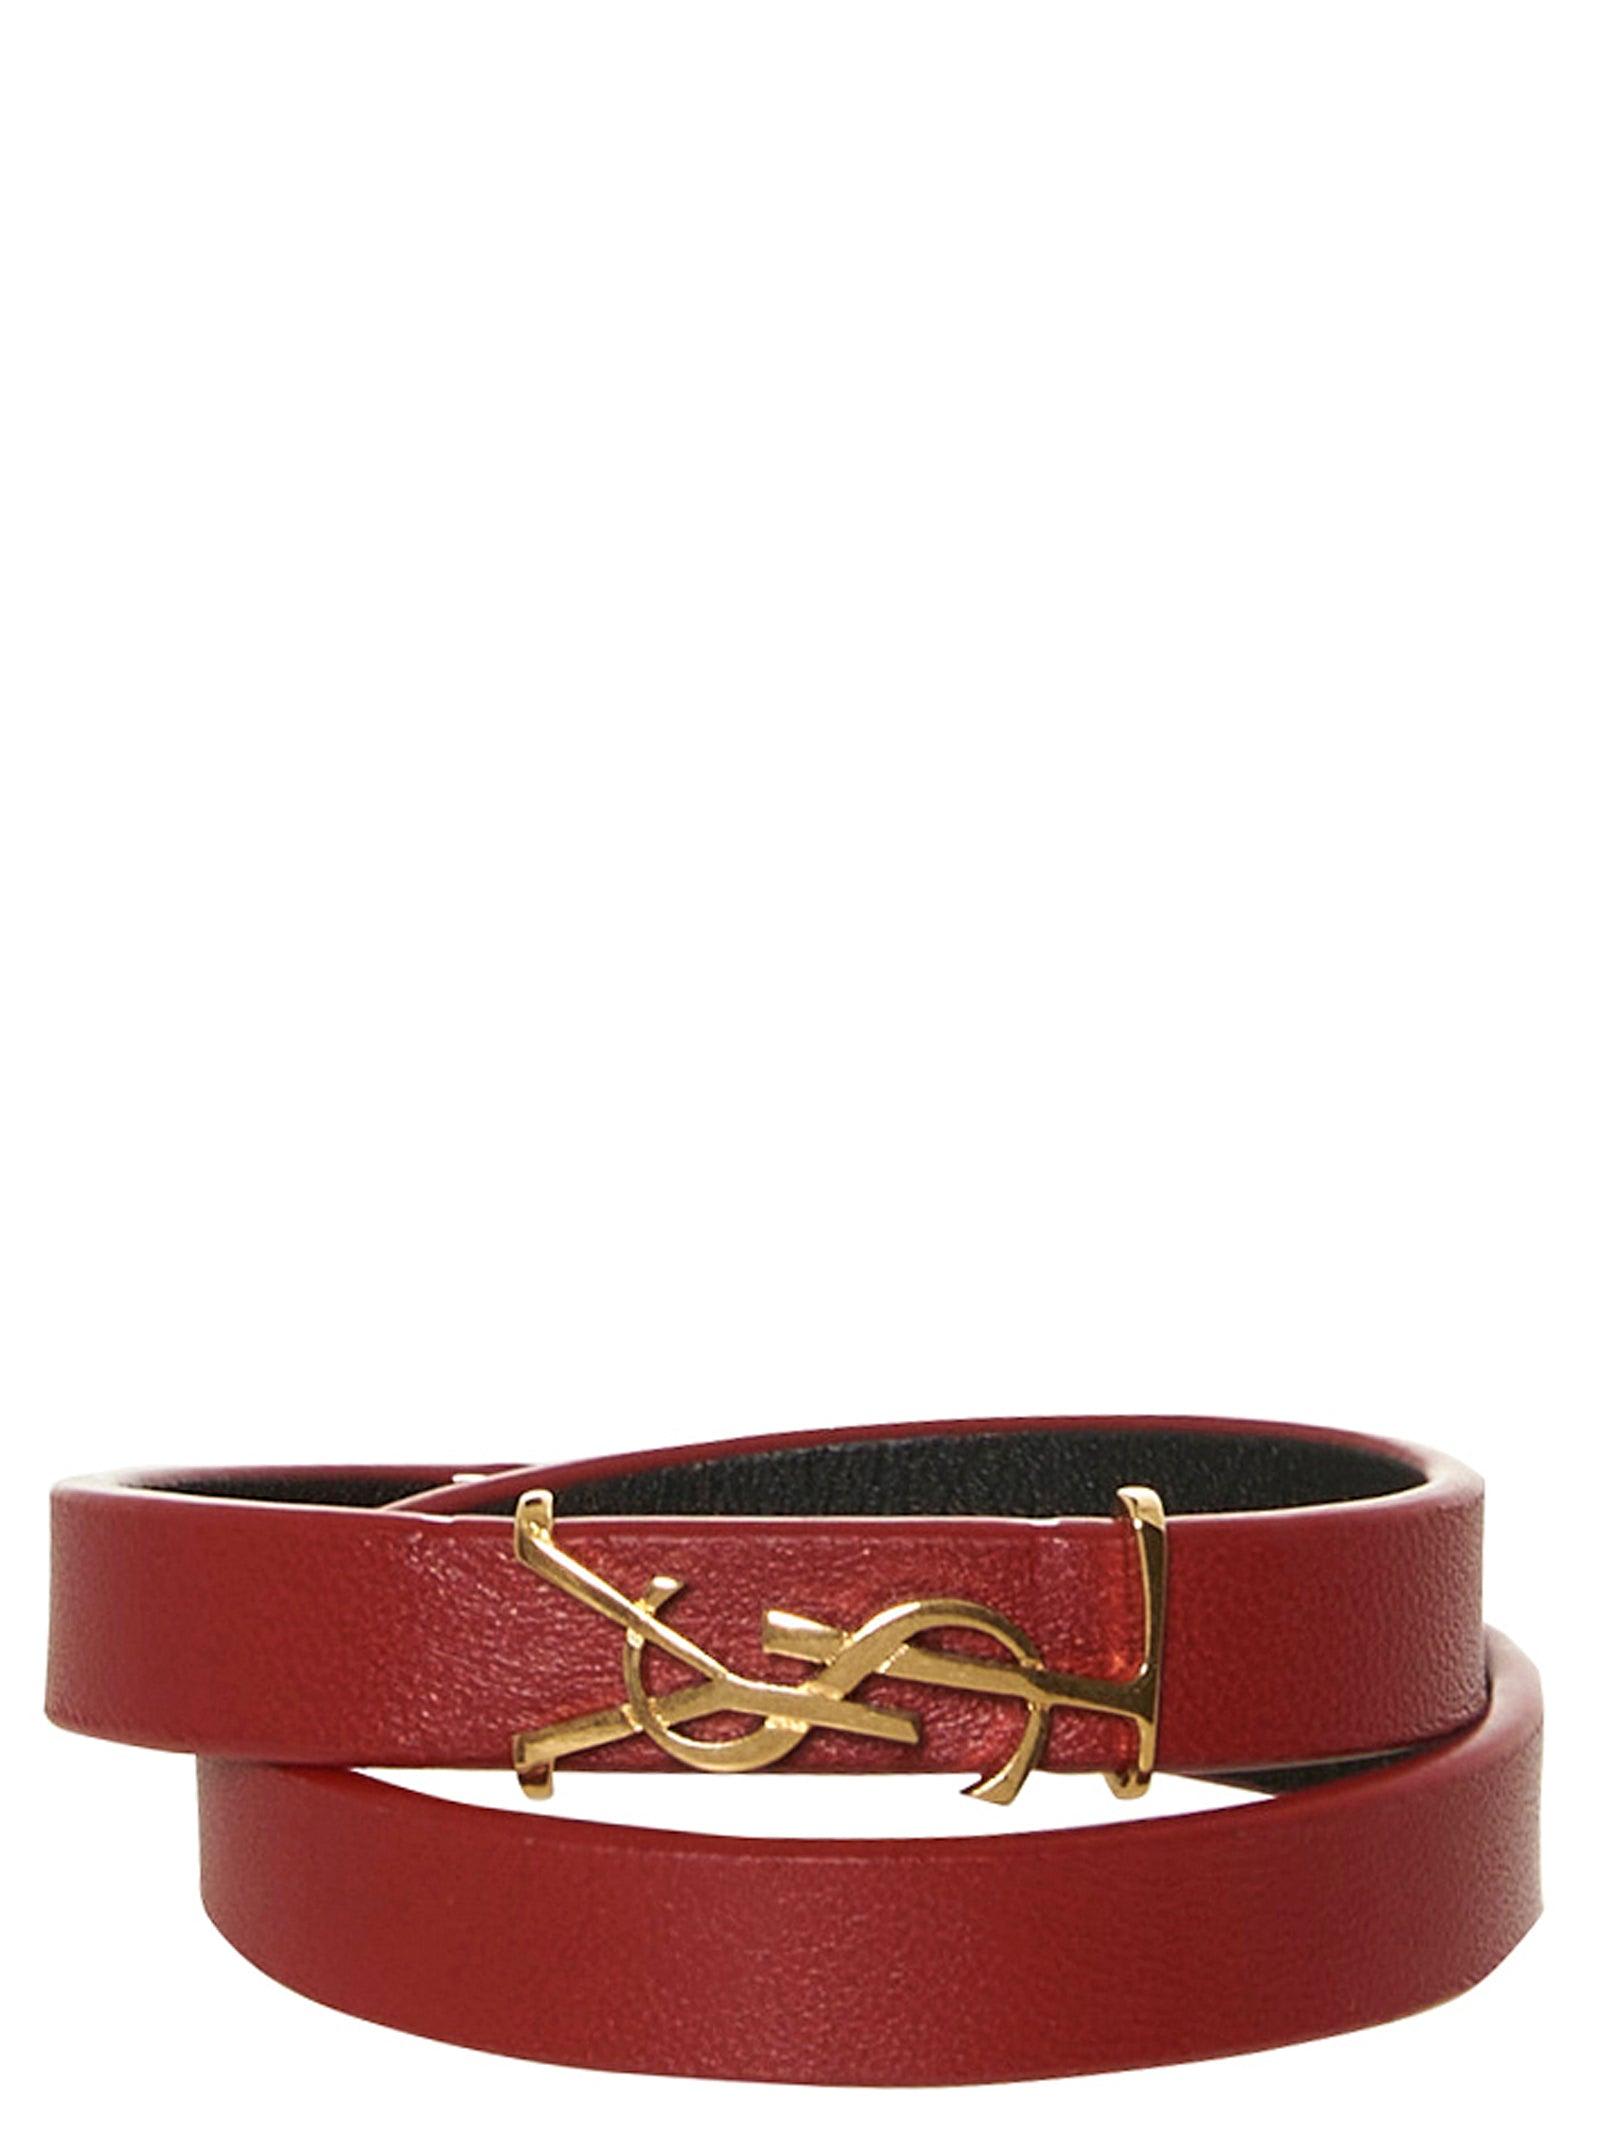 Saint Laurent Monogram Wrap Bracelet